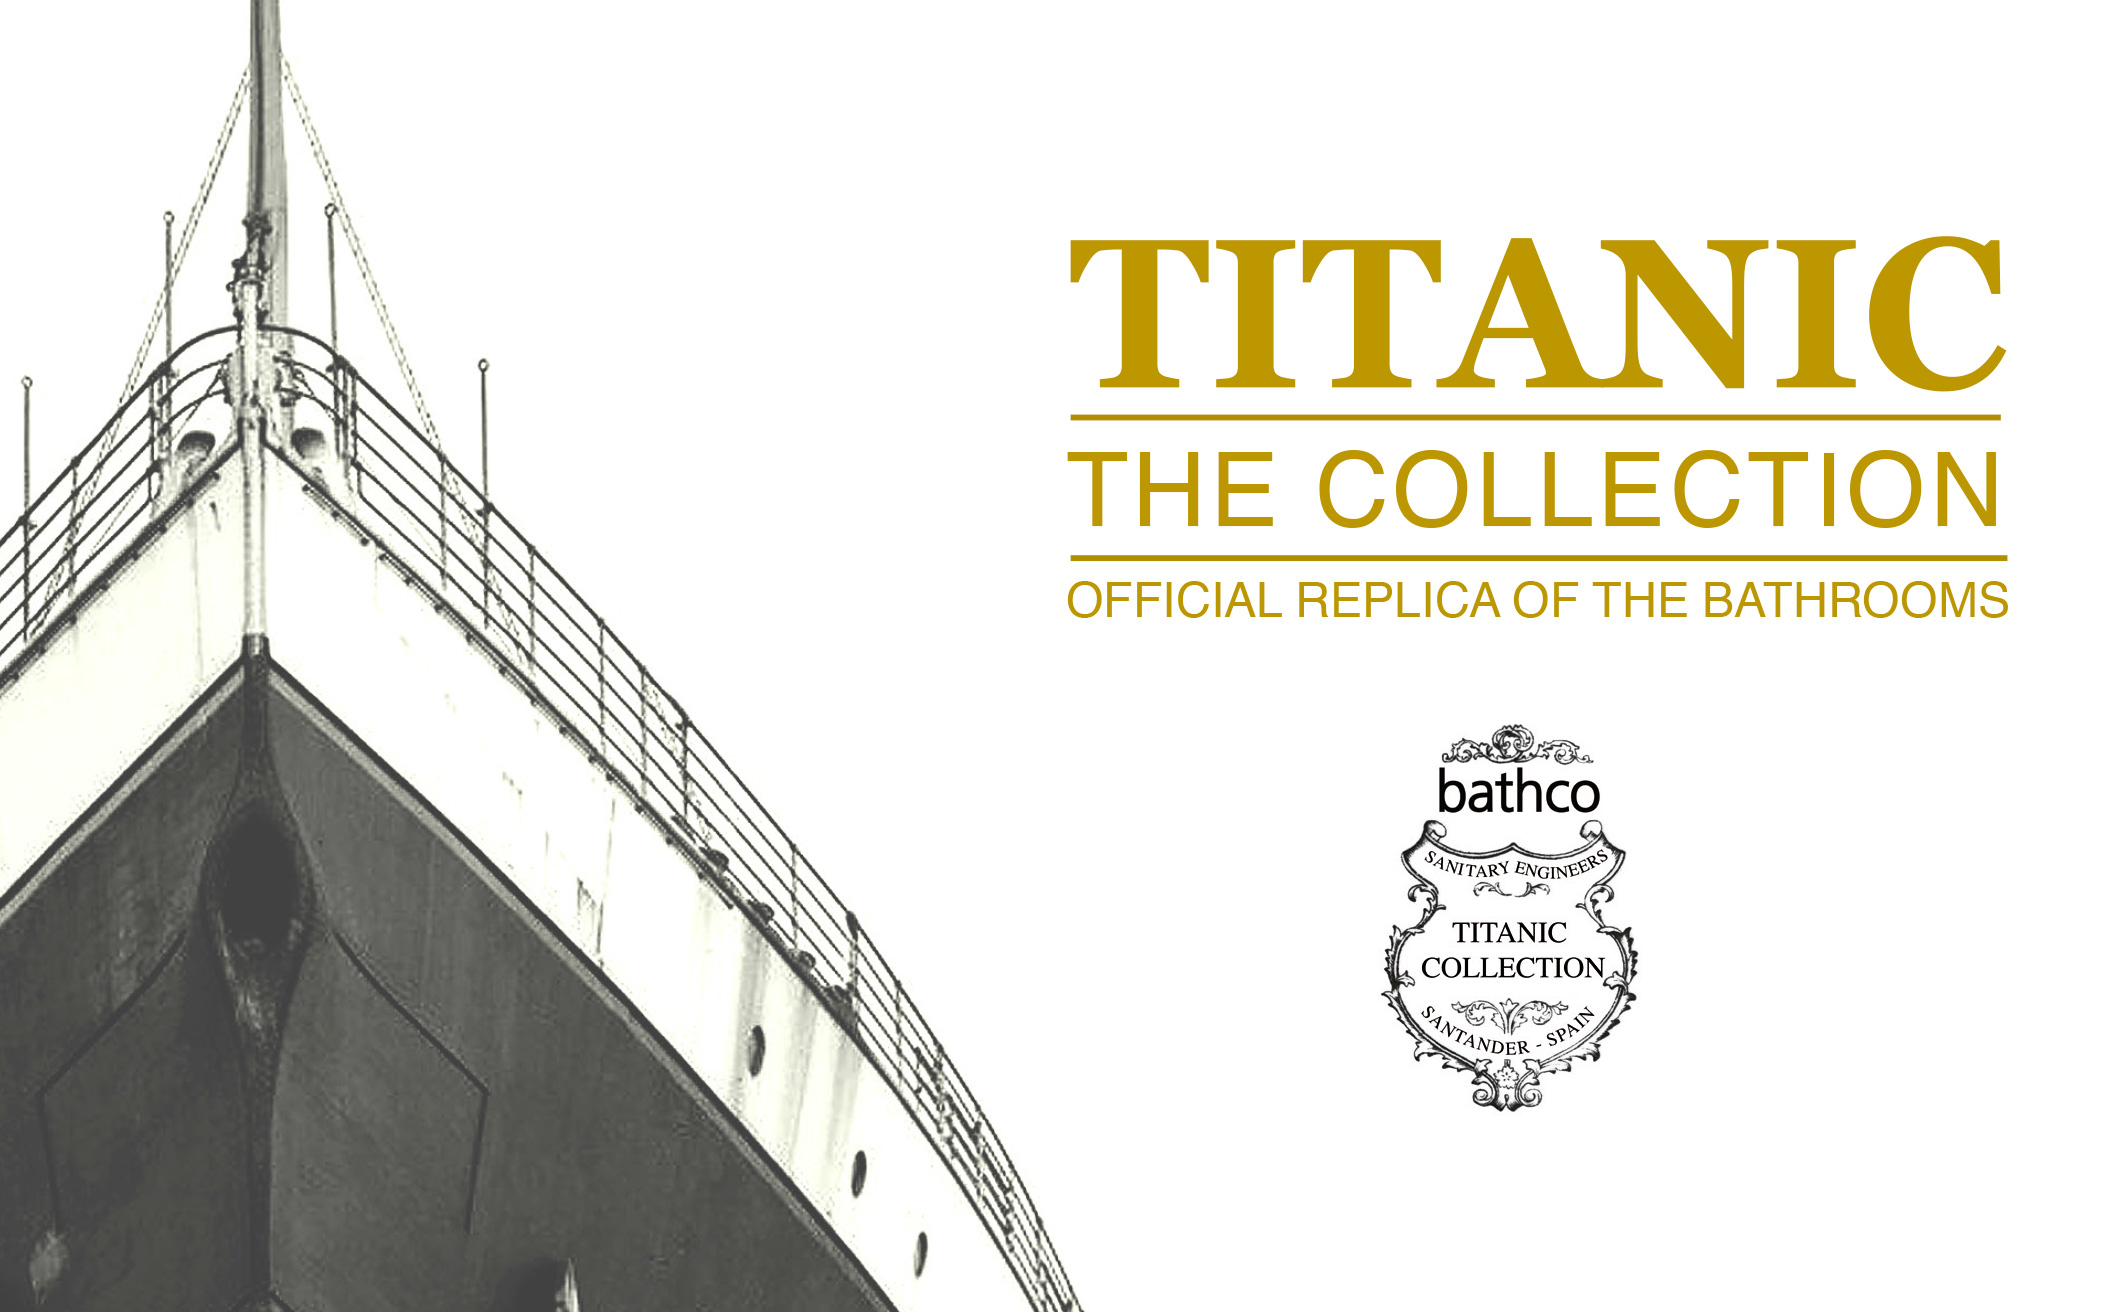 Titanic Collection by Bathco